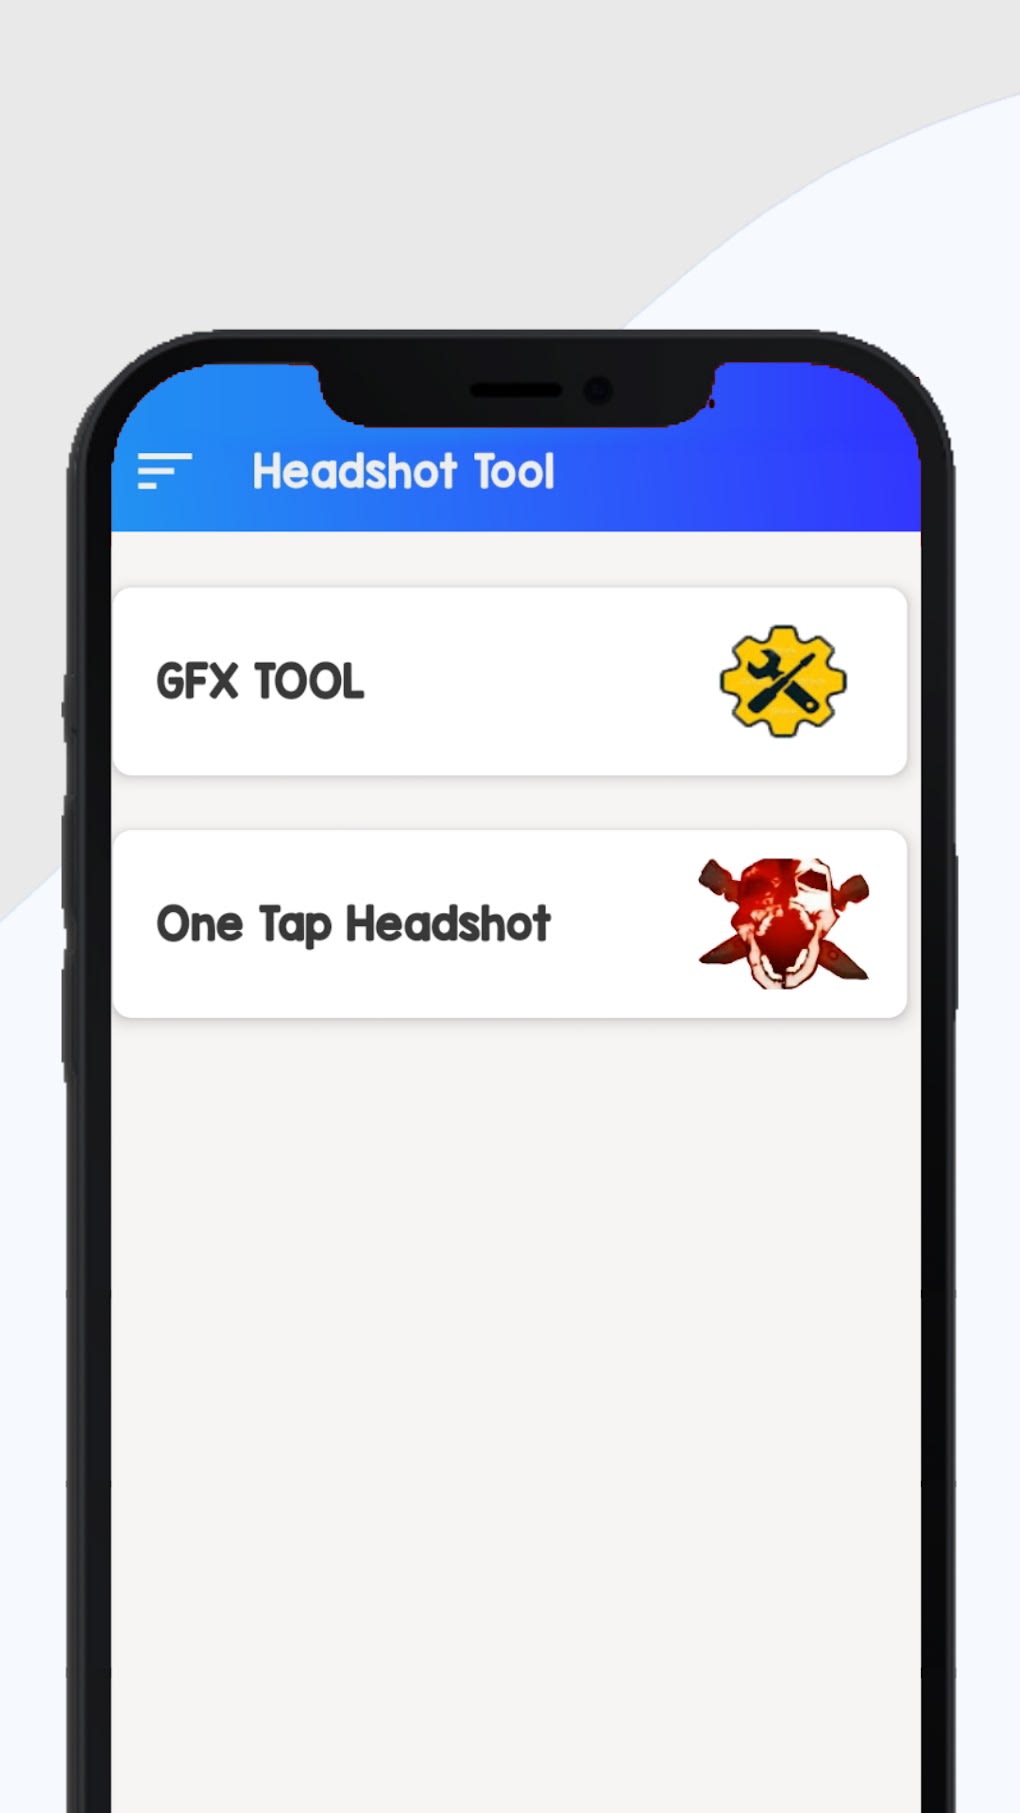 تنزيل Gfx Tool for Roblox APK الإصدار 2.0 لأجهزة Android